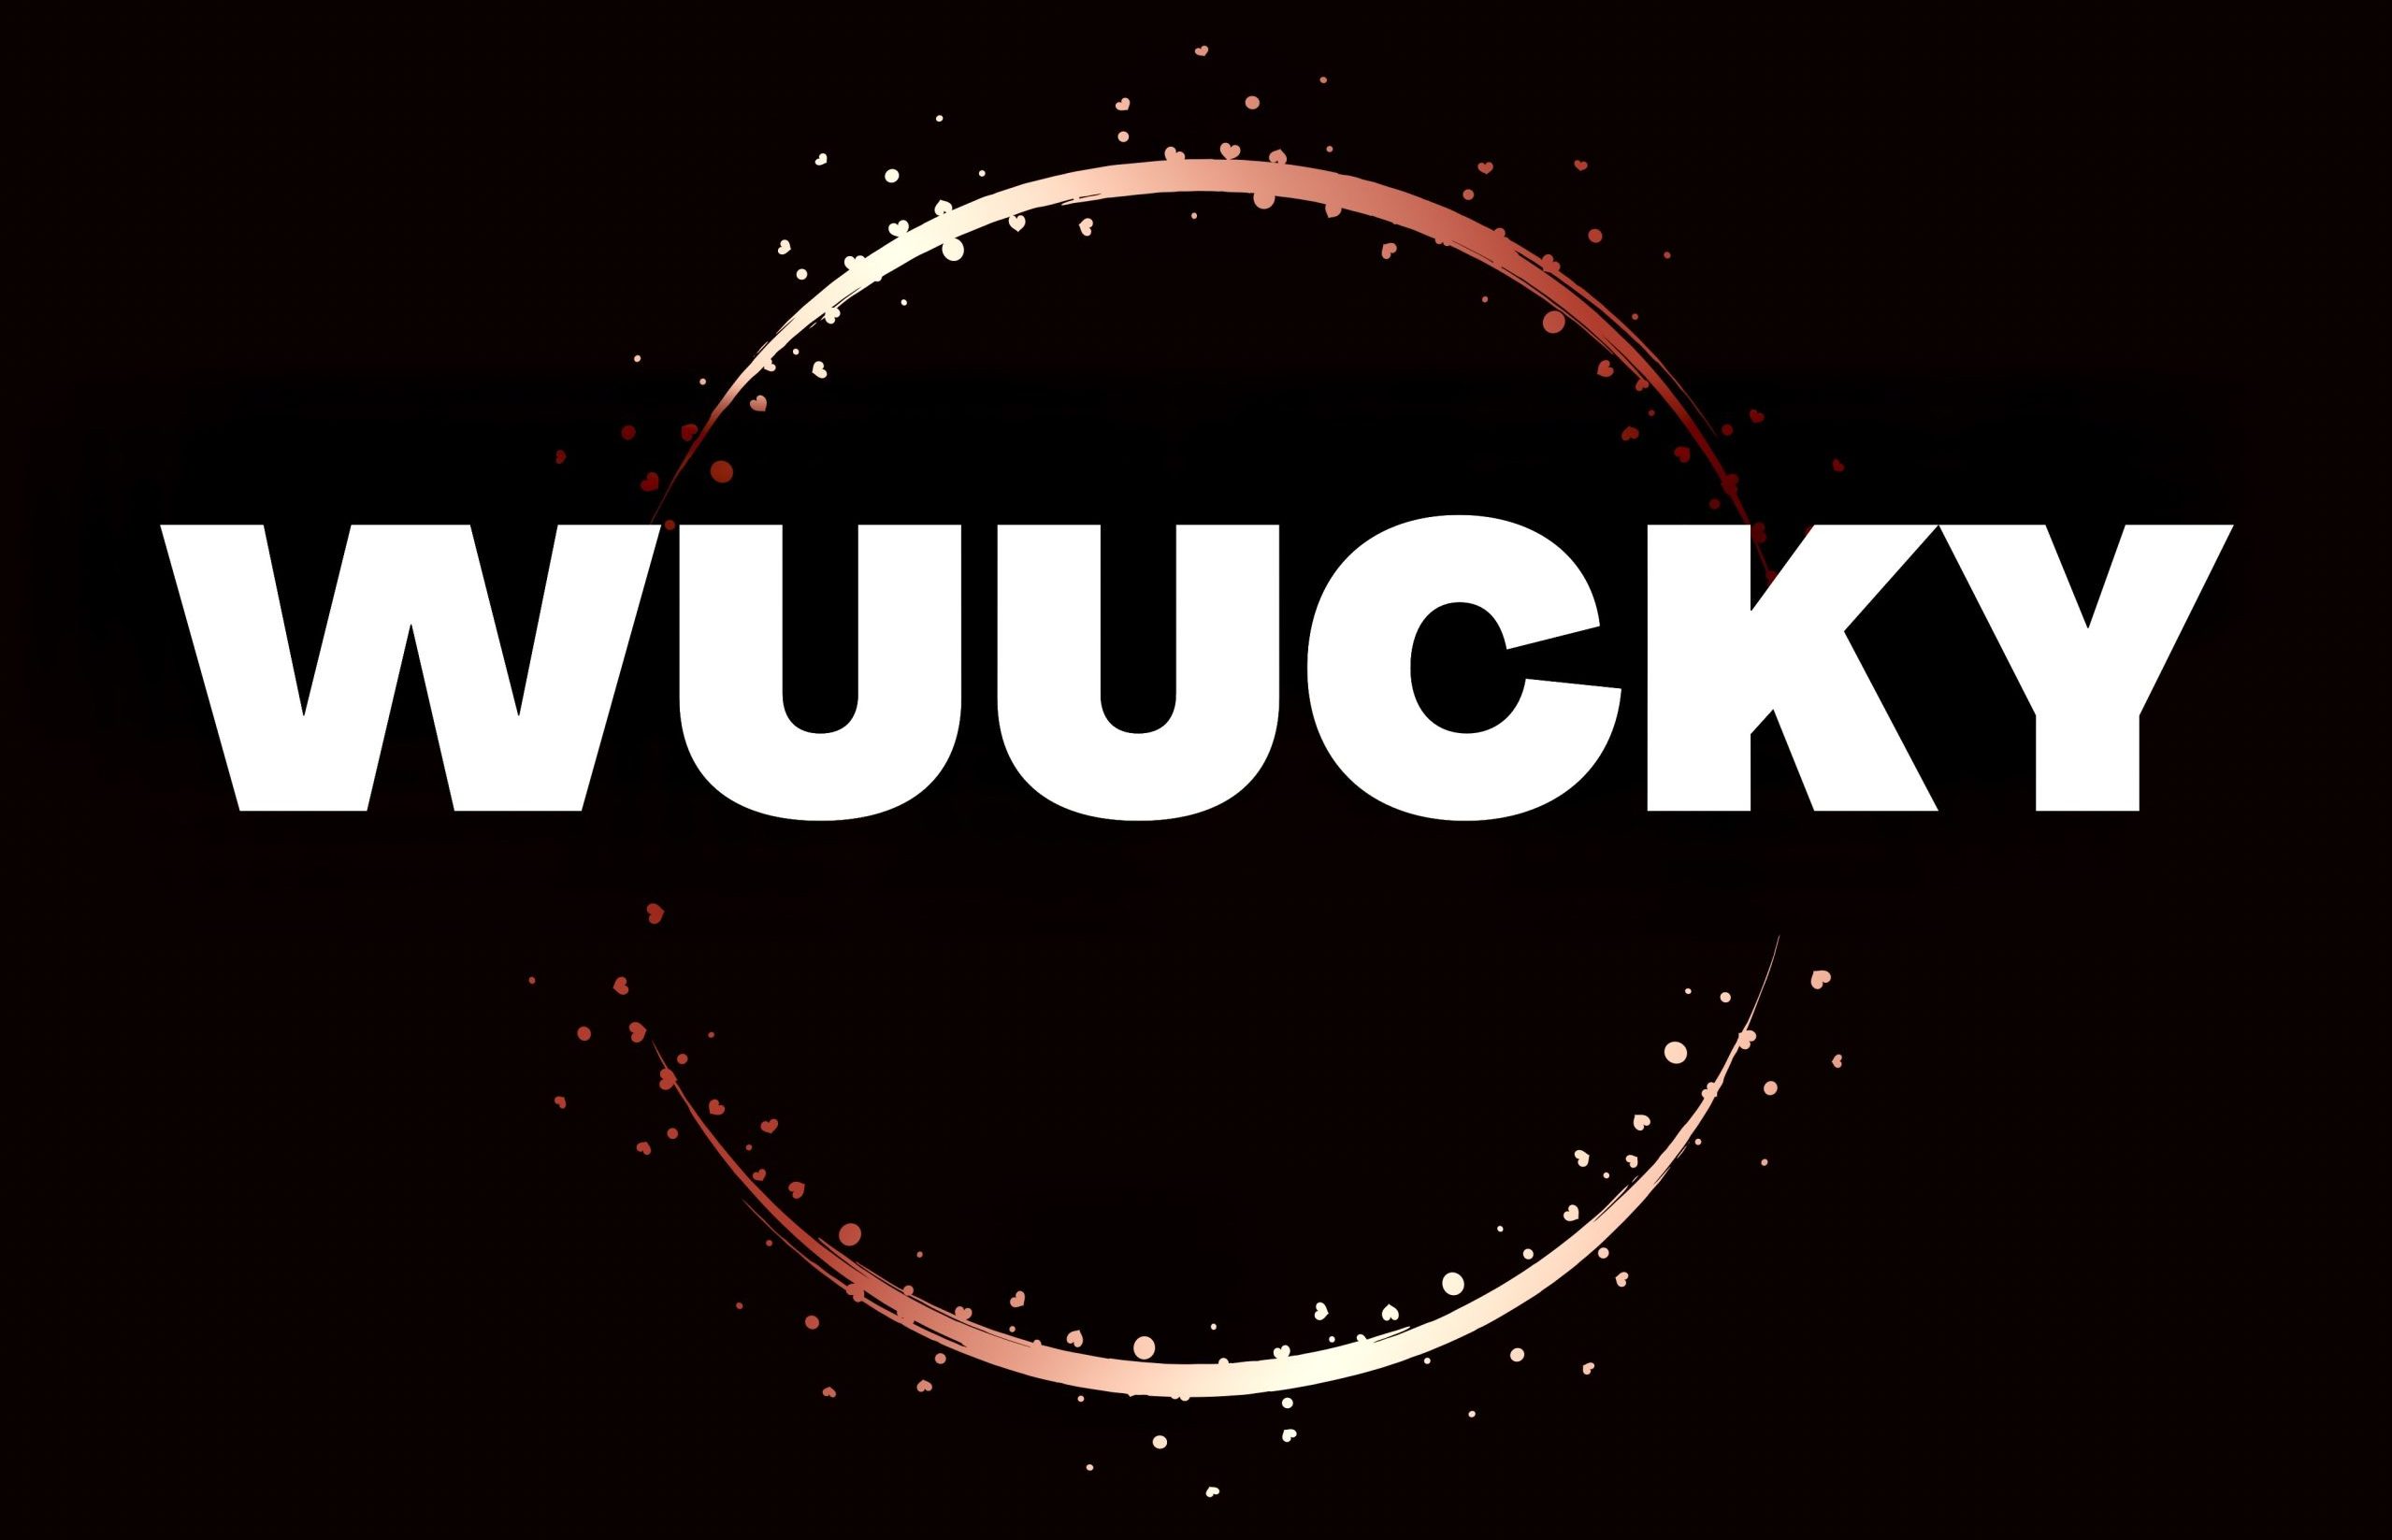 Wuucky